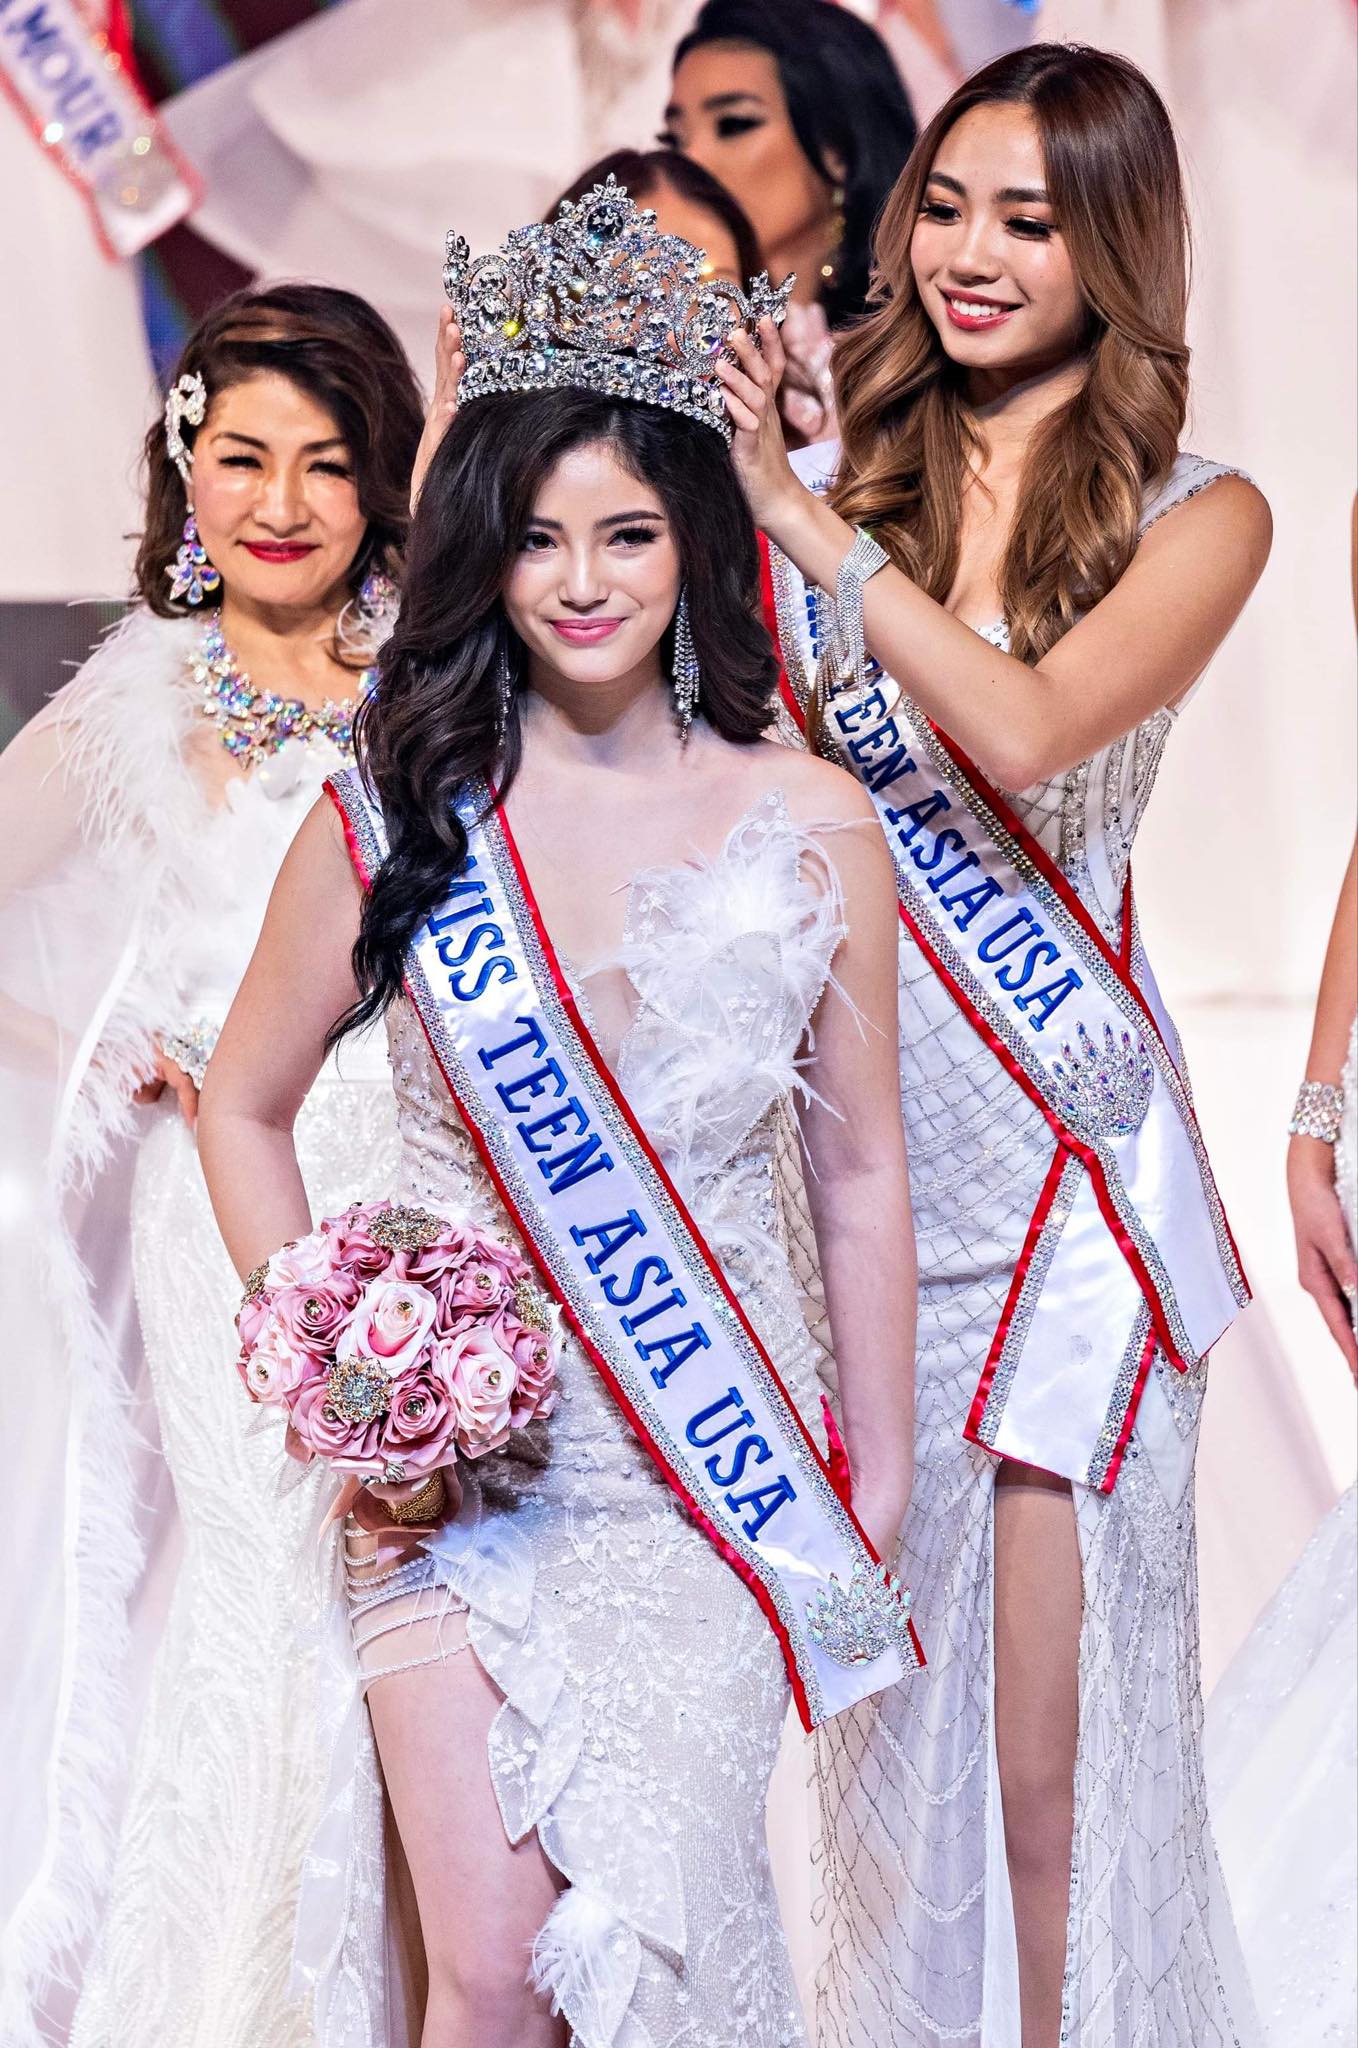 Nữ sinh lai Việt - Do Thái giành giải Miss Teen Asia USA tại Mỹ - Ảnh 1.